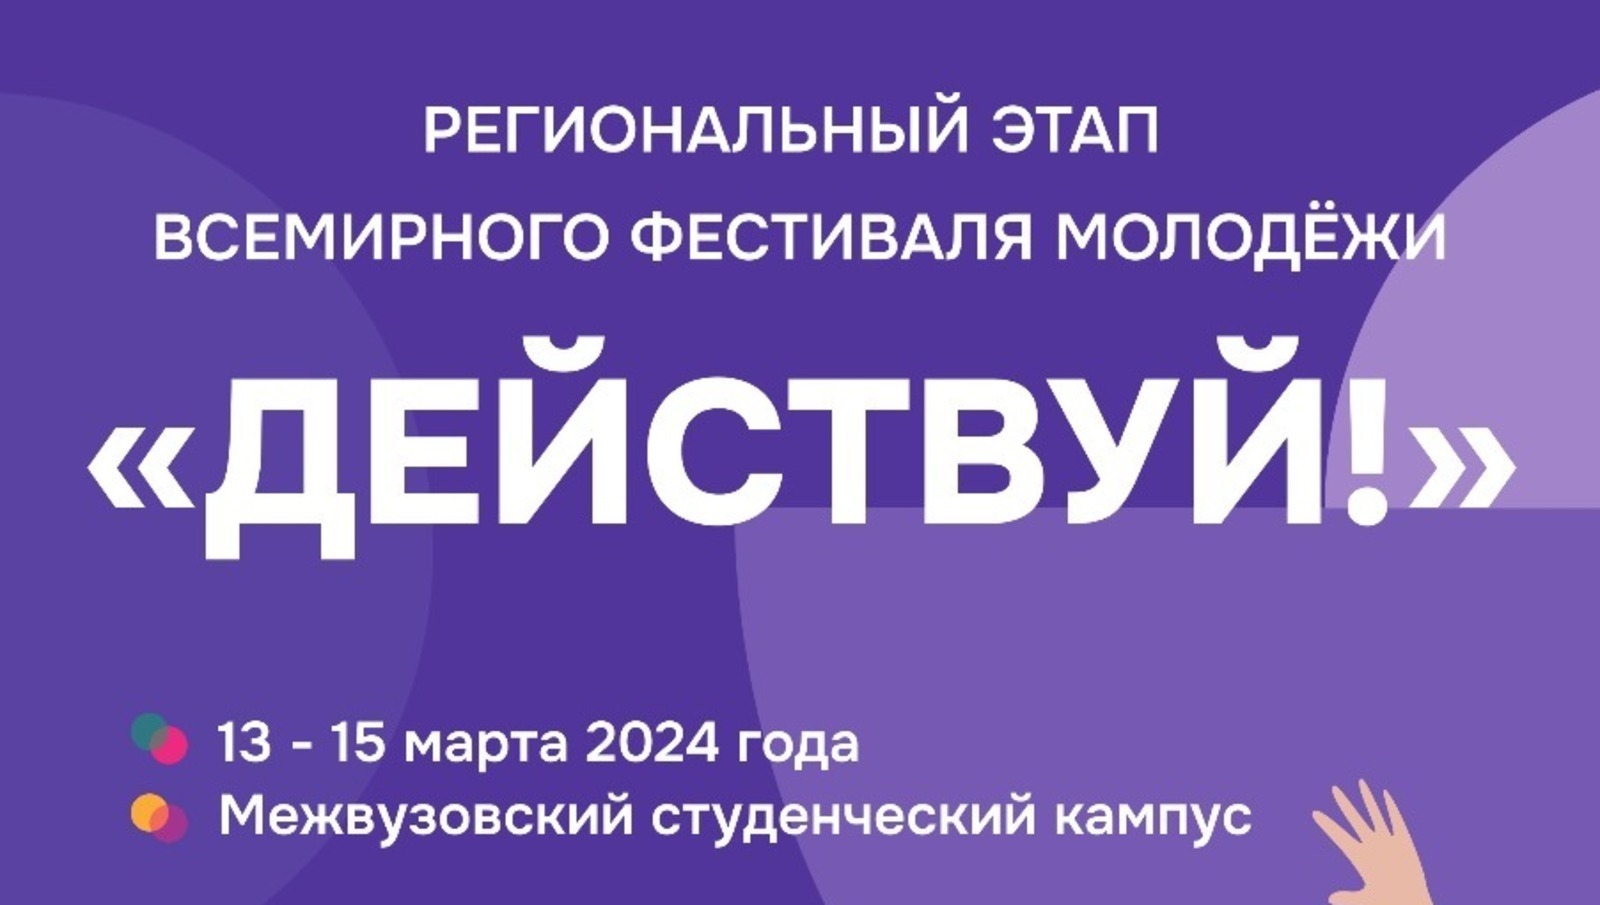 Уфа готовится к региональному этапу Всемирного фестиваля молодежи